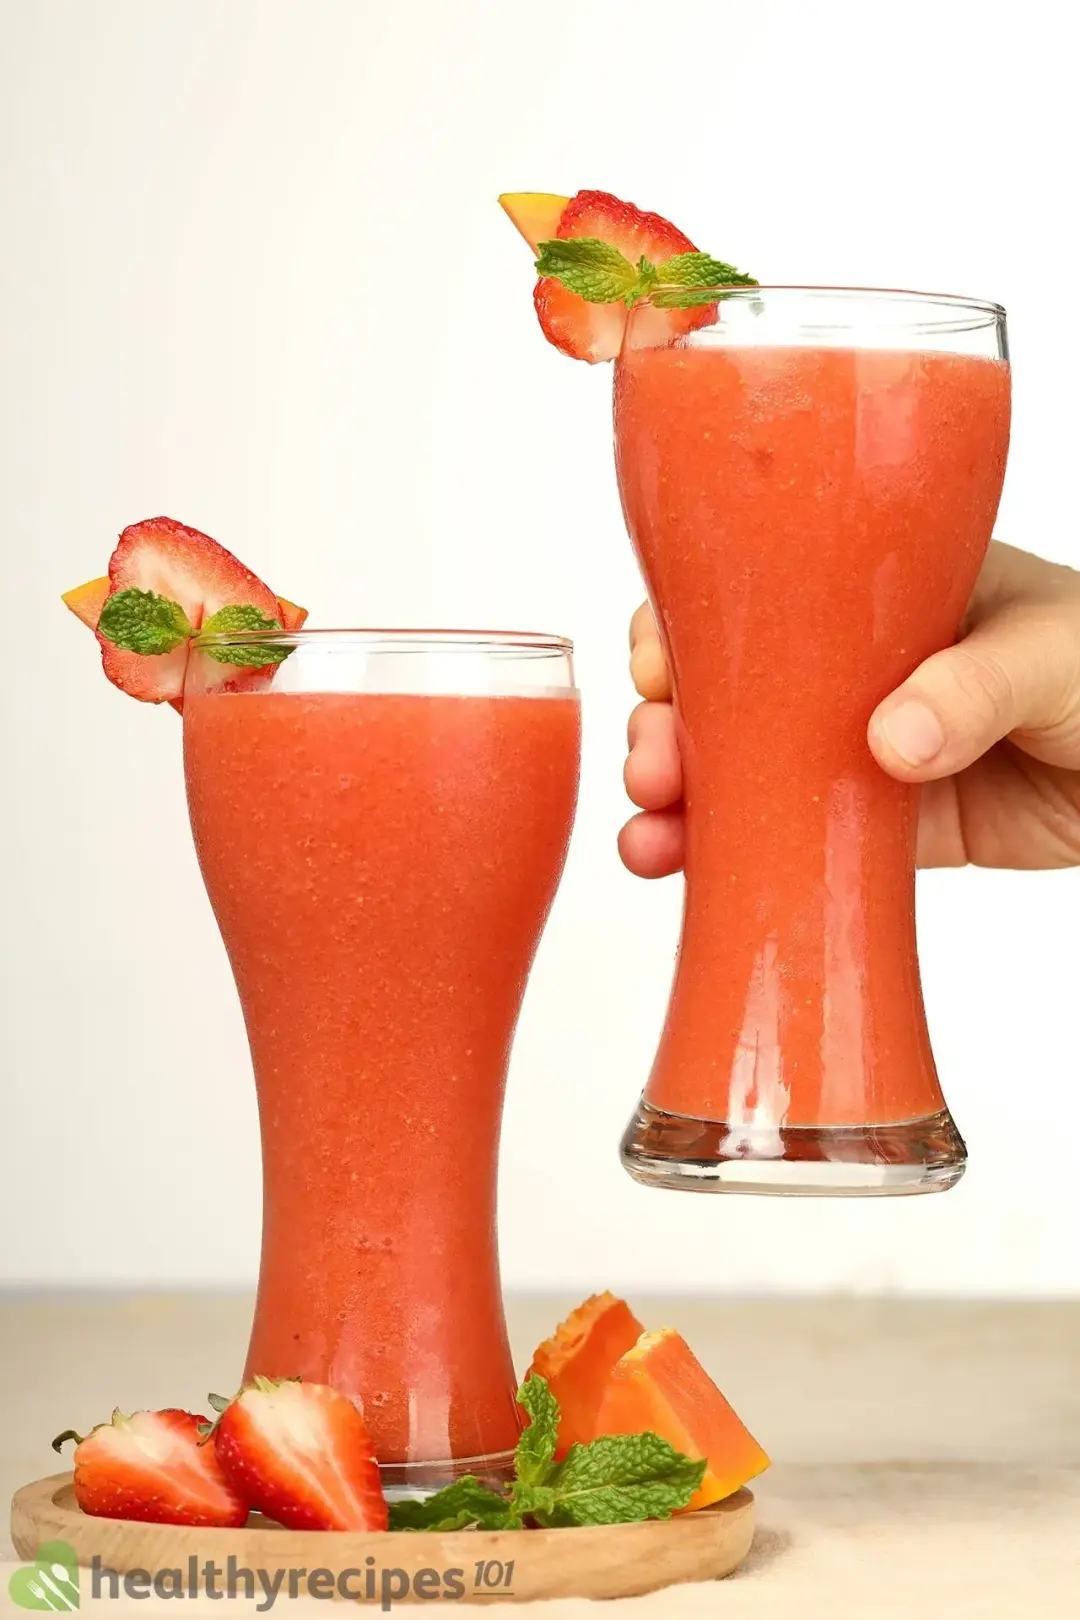 Homemade Strawberry Papaya Smoothie recipe